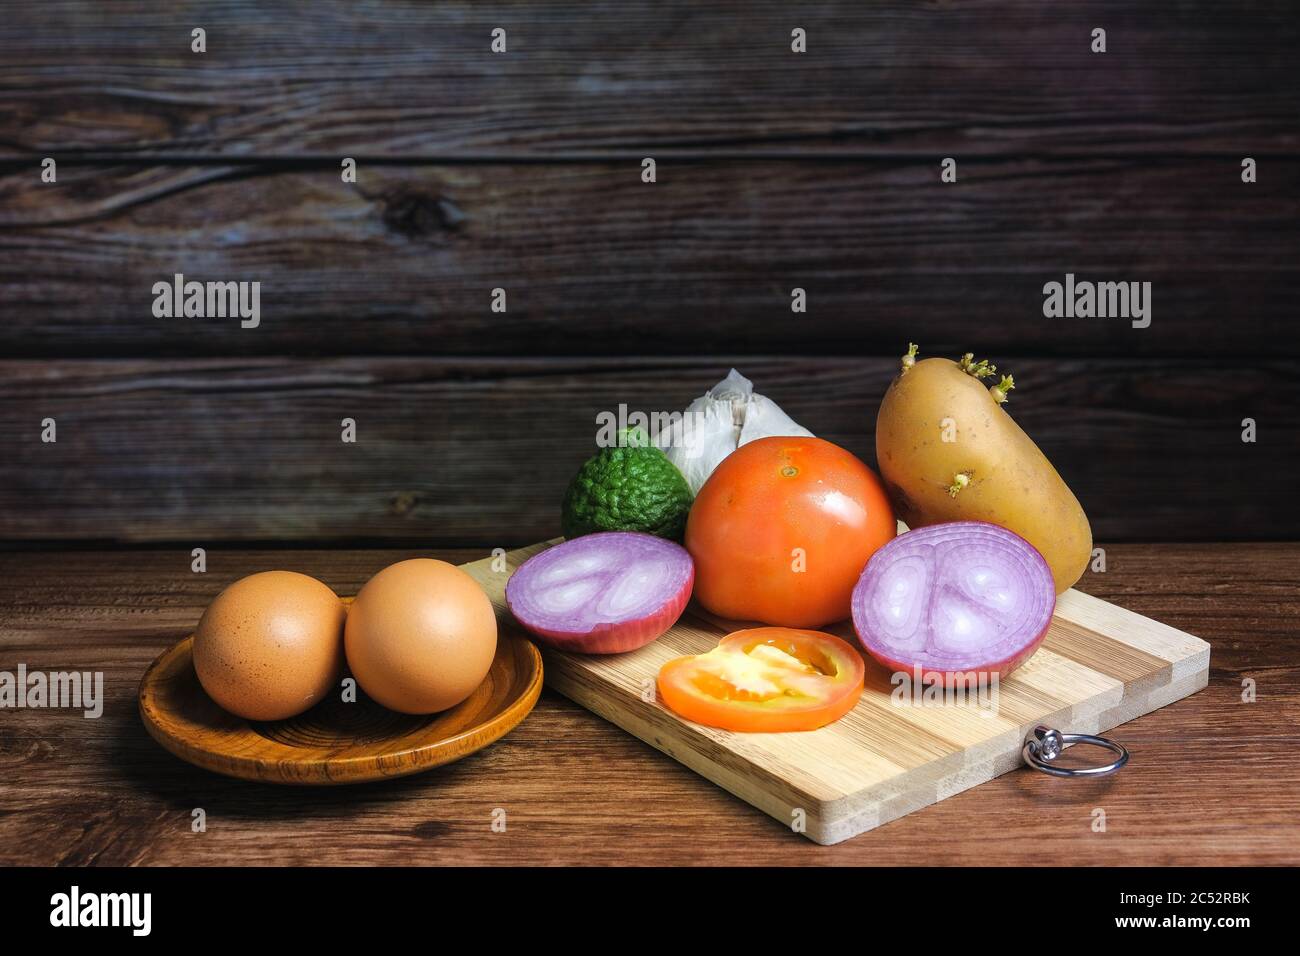 Tomate, ail, caille, oignon, oeufs et pomme de terre sur une planche à découper en bois Banque D'Images